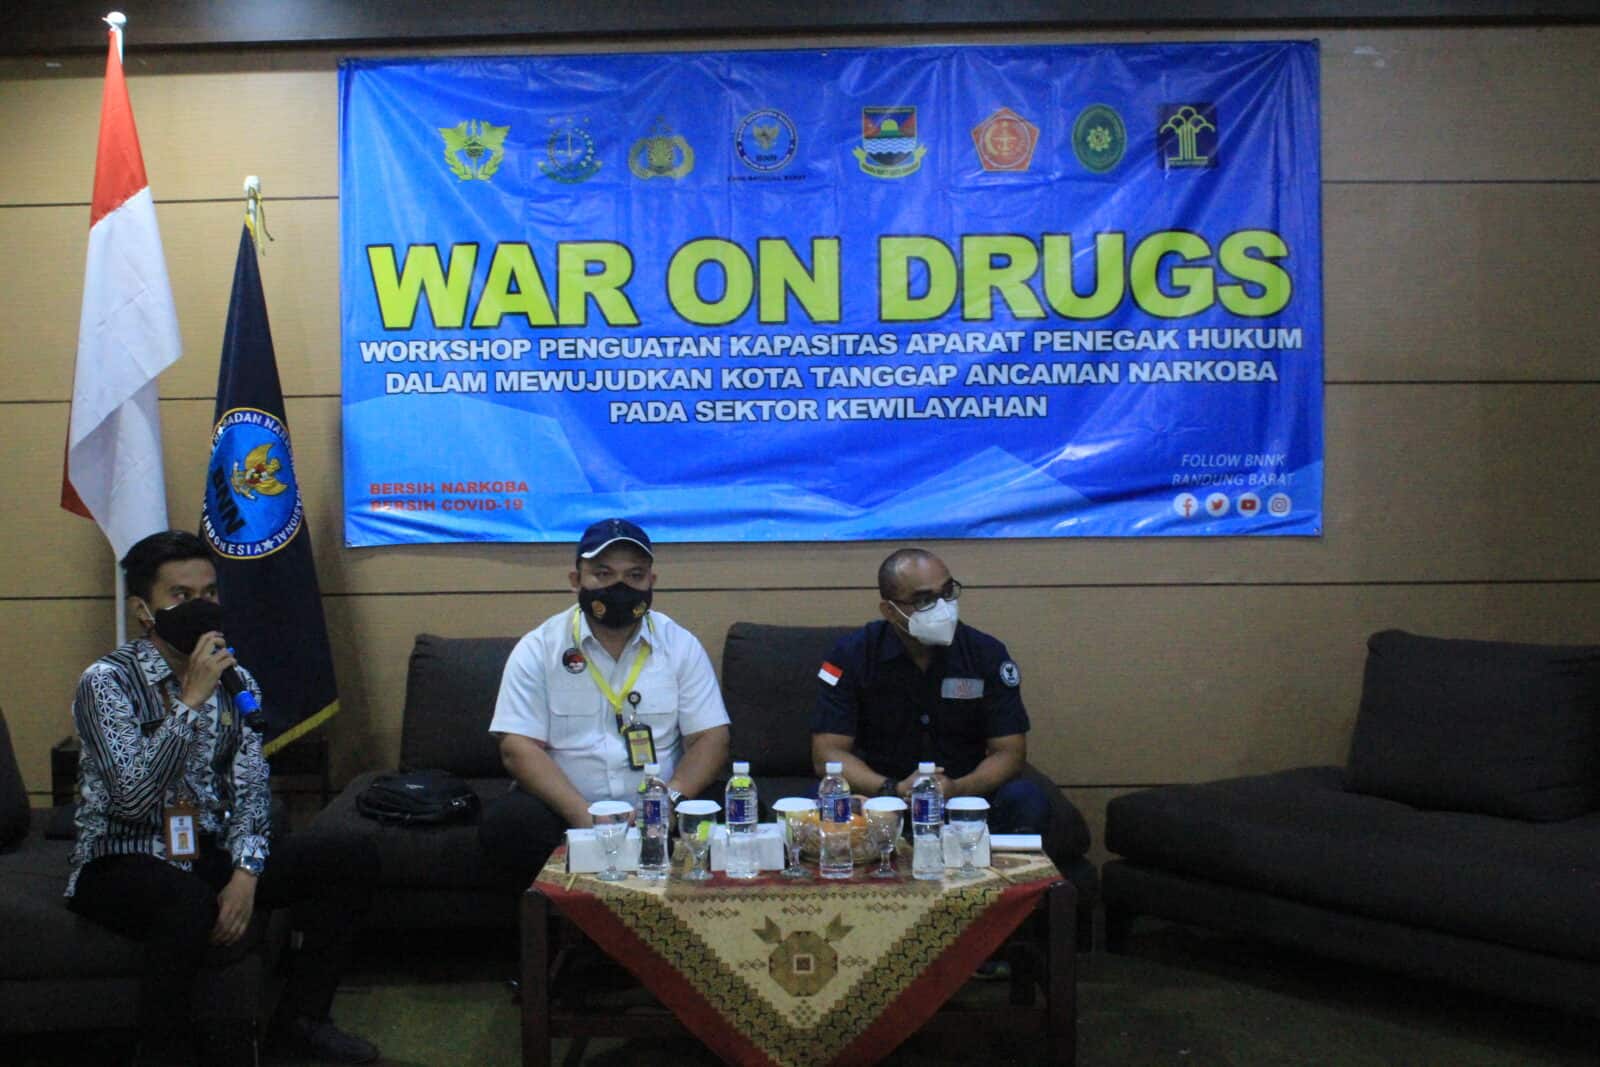 Workshop Penguatan Kapasitas Aparat Penegak Hukum Dalam Mewujudkan Kota Tanggap Ancaman Narkoba Pada Sektor Kewilayahan